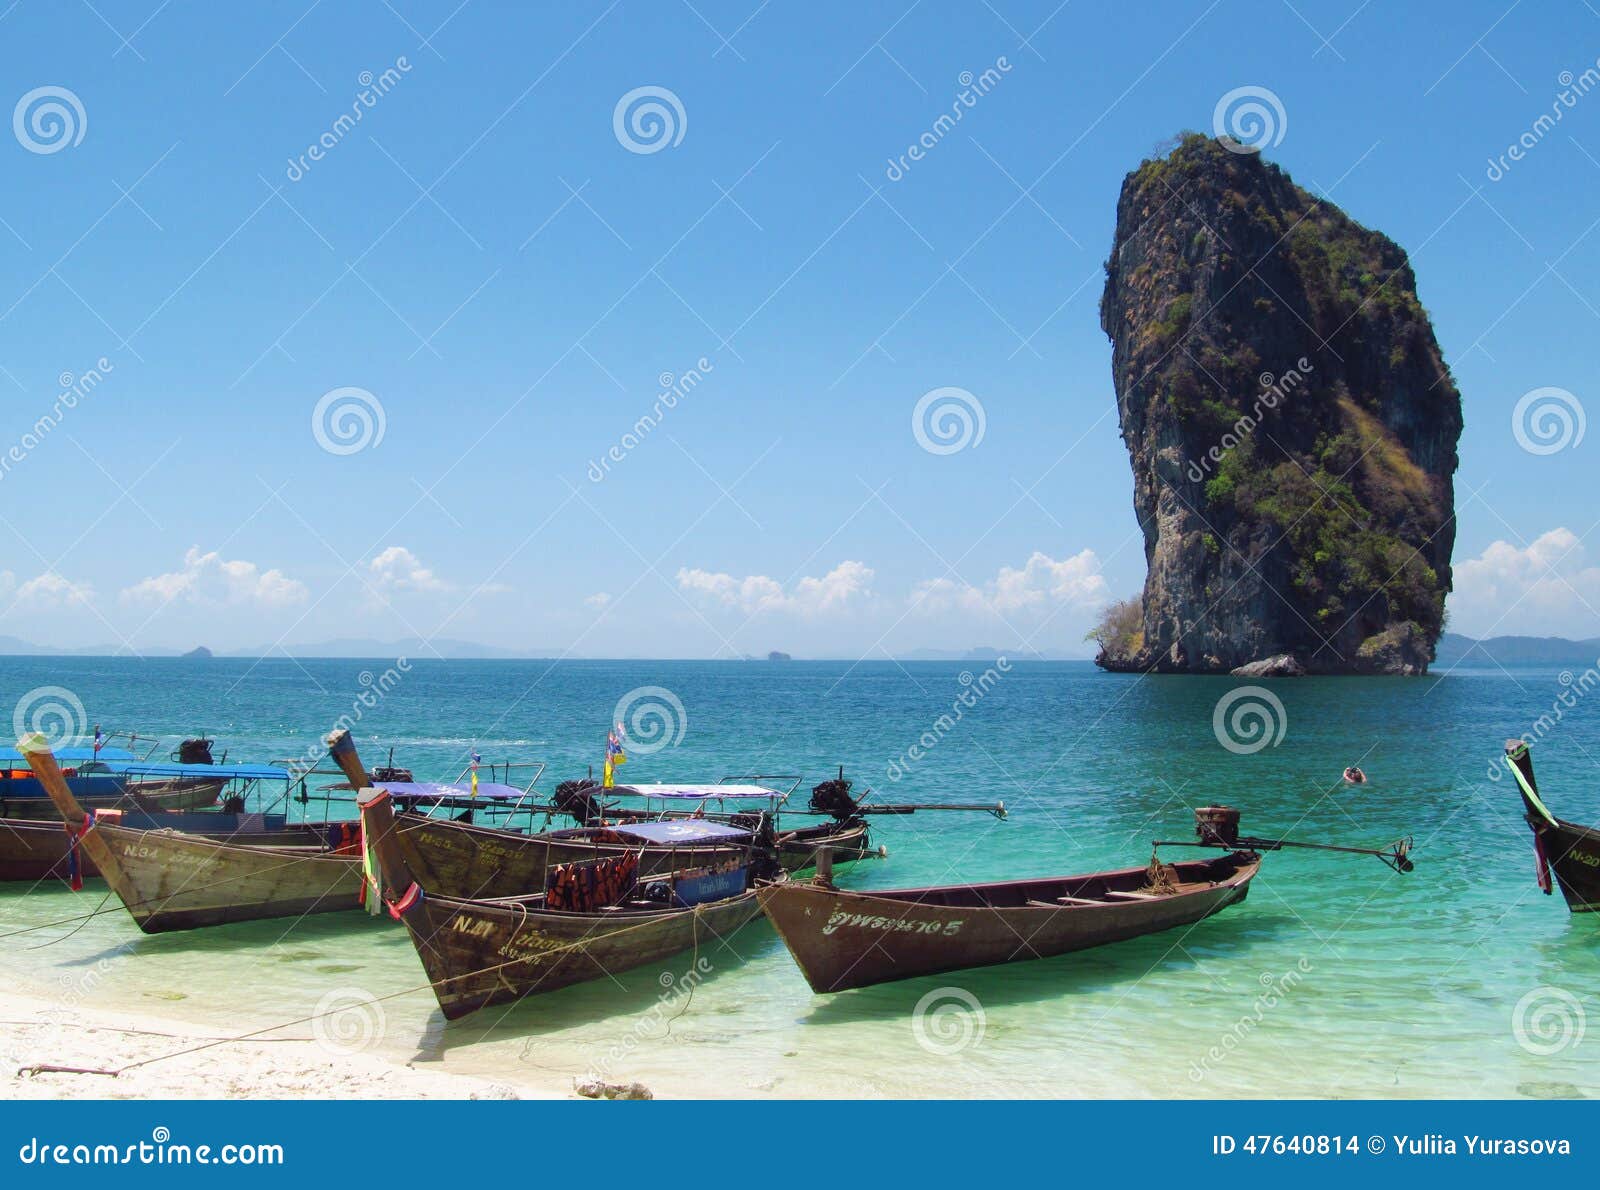 Długiego ogonu łodzie w Krabi plażach Tajlandia i wyspach. Krabi plaże Tajlandia i wyspy, wapień rockowe formacje Piękna biała piasek plaża, drzewka palmowe, błękitne wody i jasny niebieskie niebo na słonecznym dniu, Ludzie sunbathing, chodzi i snookering, Nadzwyczajne wapień falezy, miękkie białe piasek plaże, małe zatoczki i na morzu wyspy, Â Krabi pięknej linii brzegowej i długiego ogonu łodzie